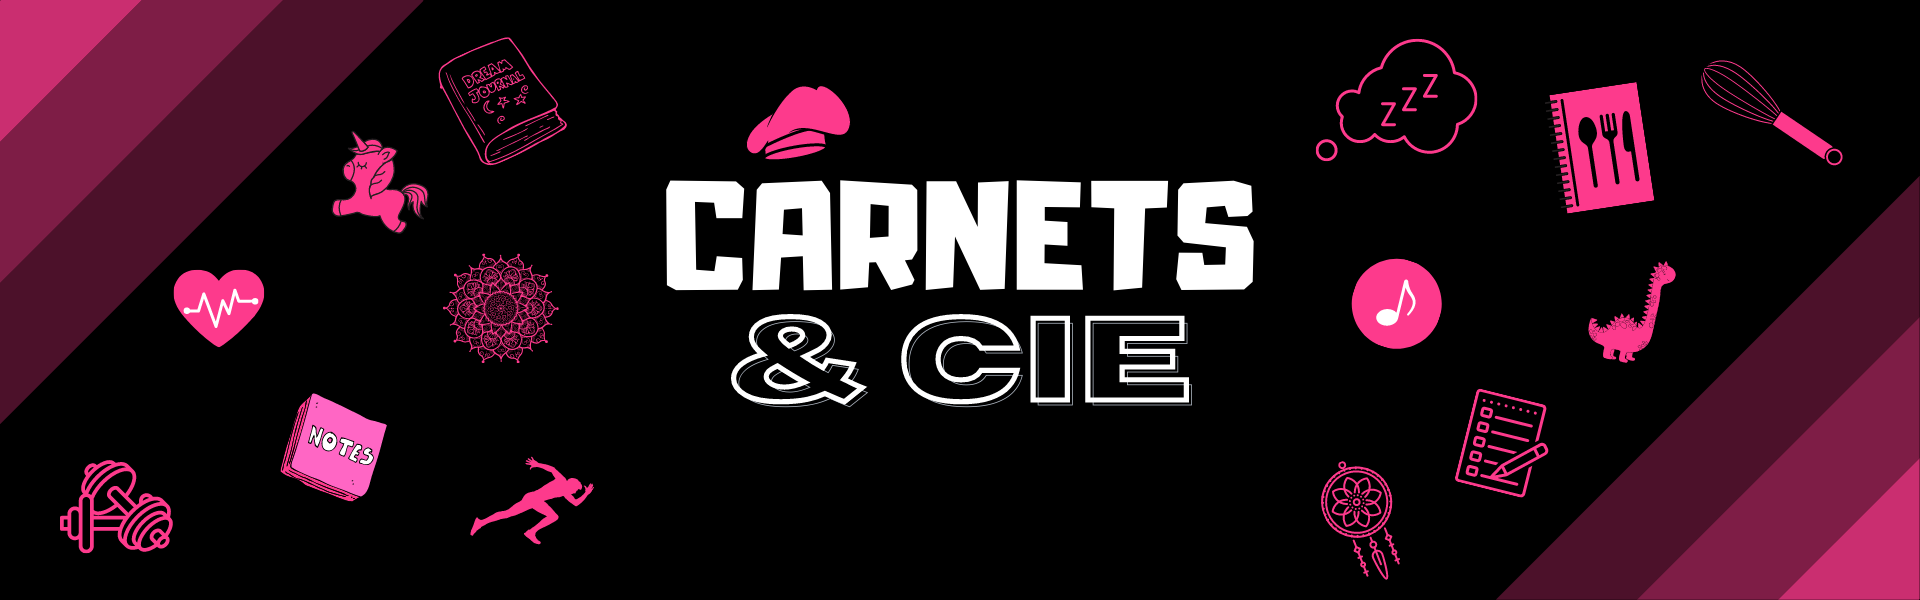 Carnets & cie - Banderole